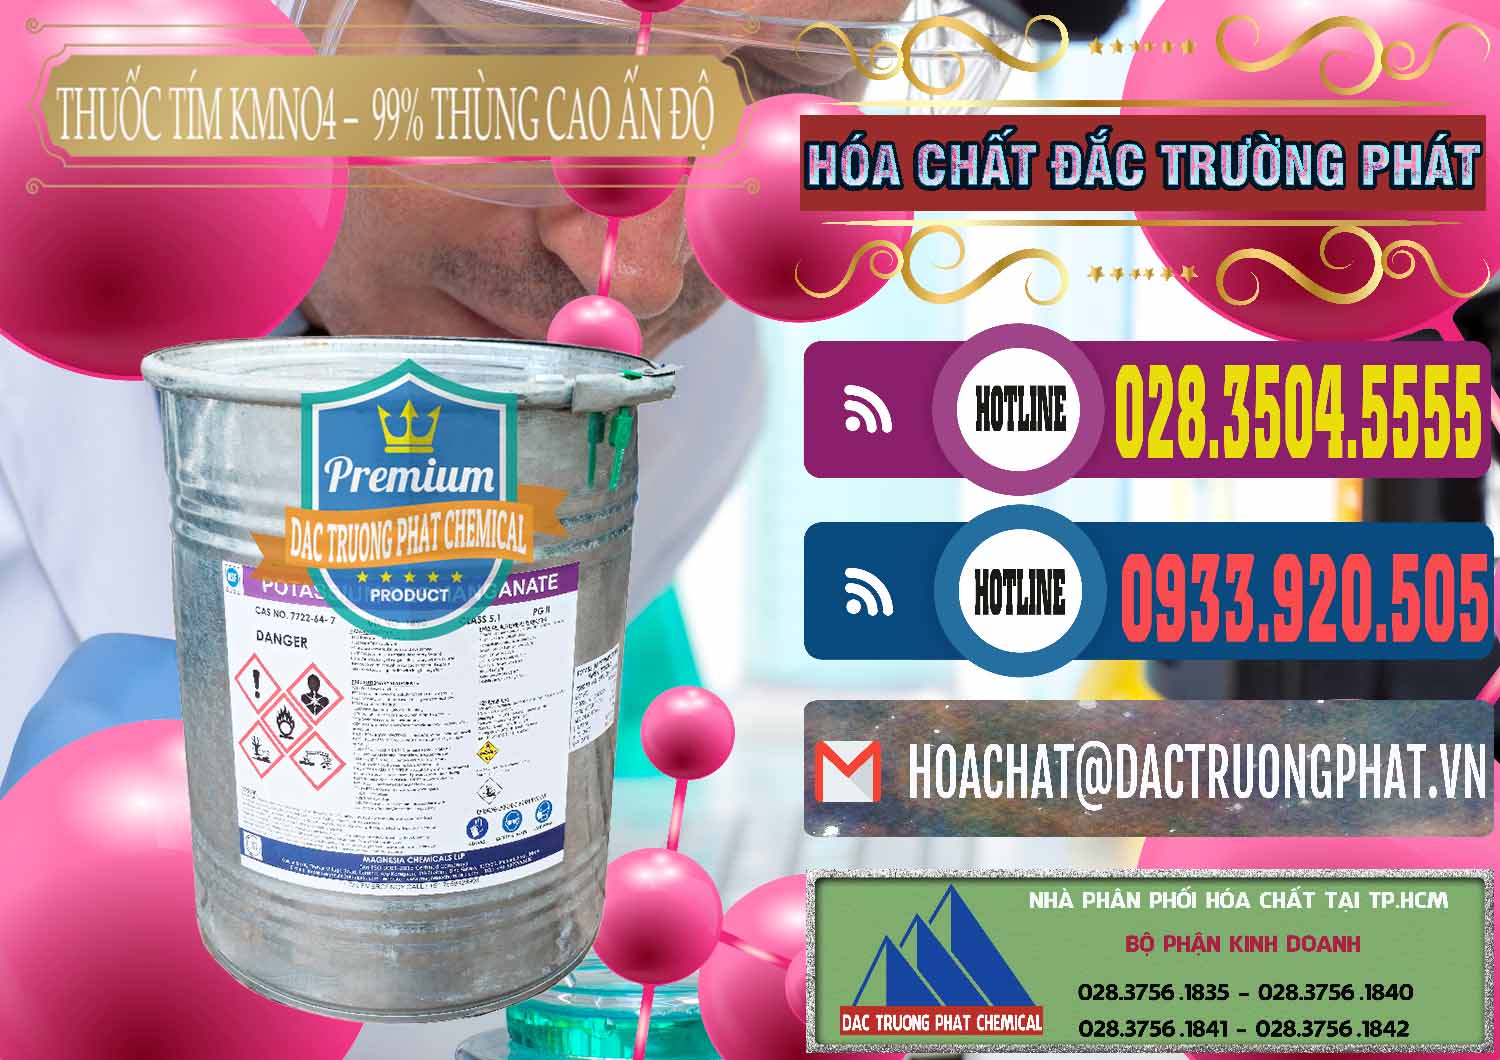 Nơi bán _ cung cấp Thuốc Tím - KMNO4 Thùng Cao 99% Magnesia Chemicals Ấn Độ India - 0164 - Nơi chuyên kinh doanh ( cung cấp ) hóa chất tại TP.HCM - muabanhoachat.com.vn